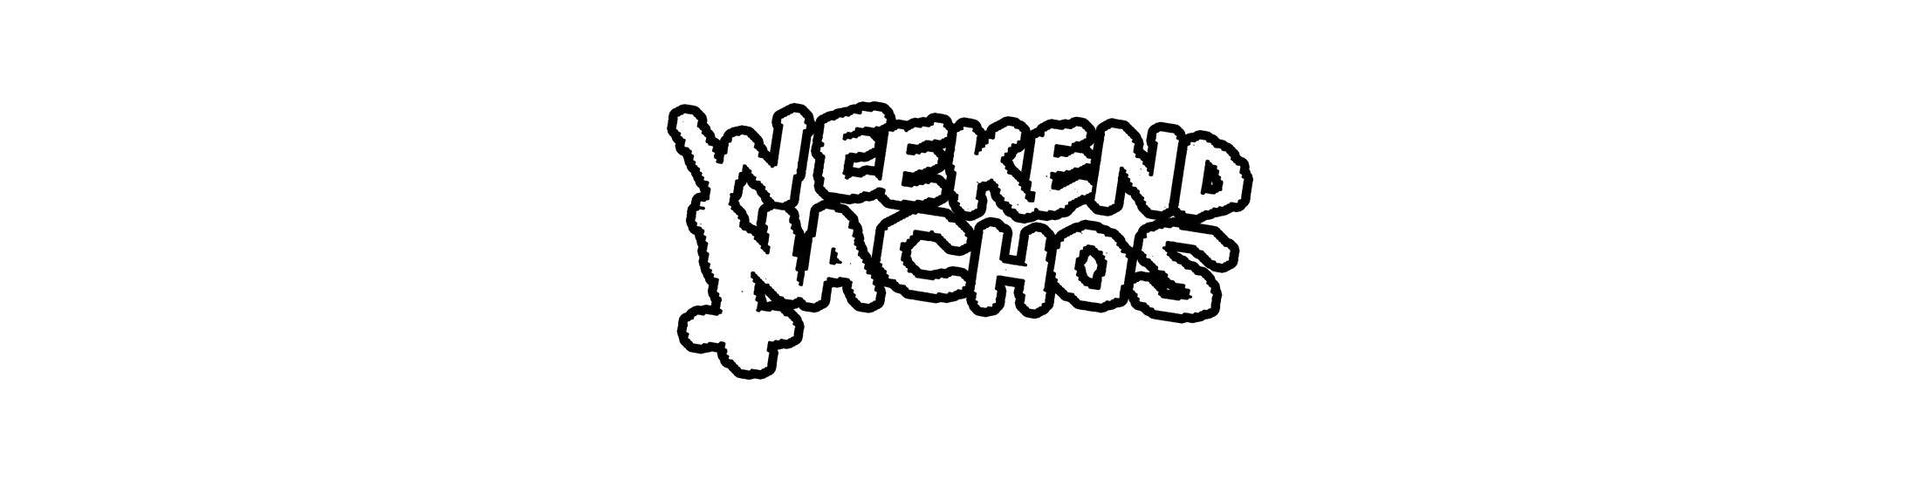 Shop – Weekend Nachos – Band & Music Merch – Cold Cuts Merch